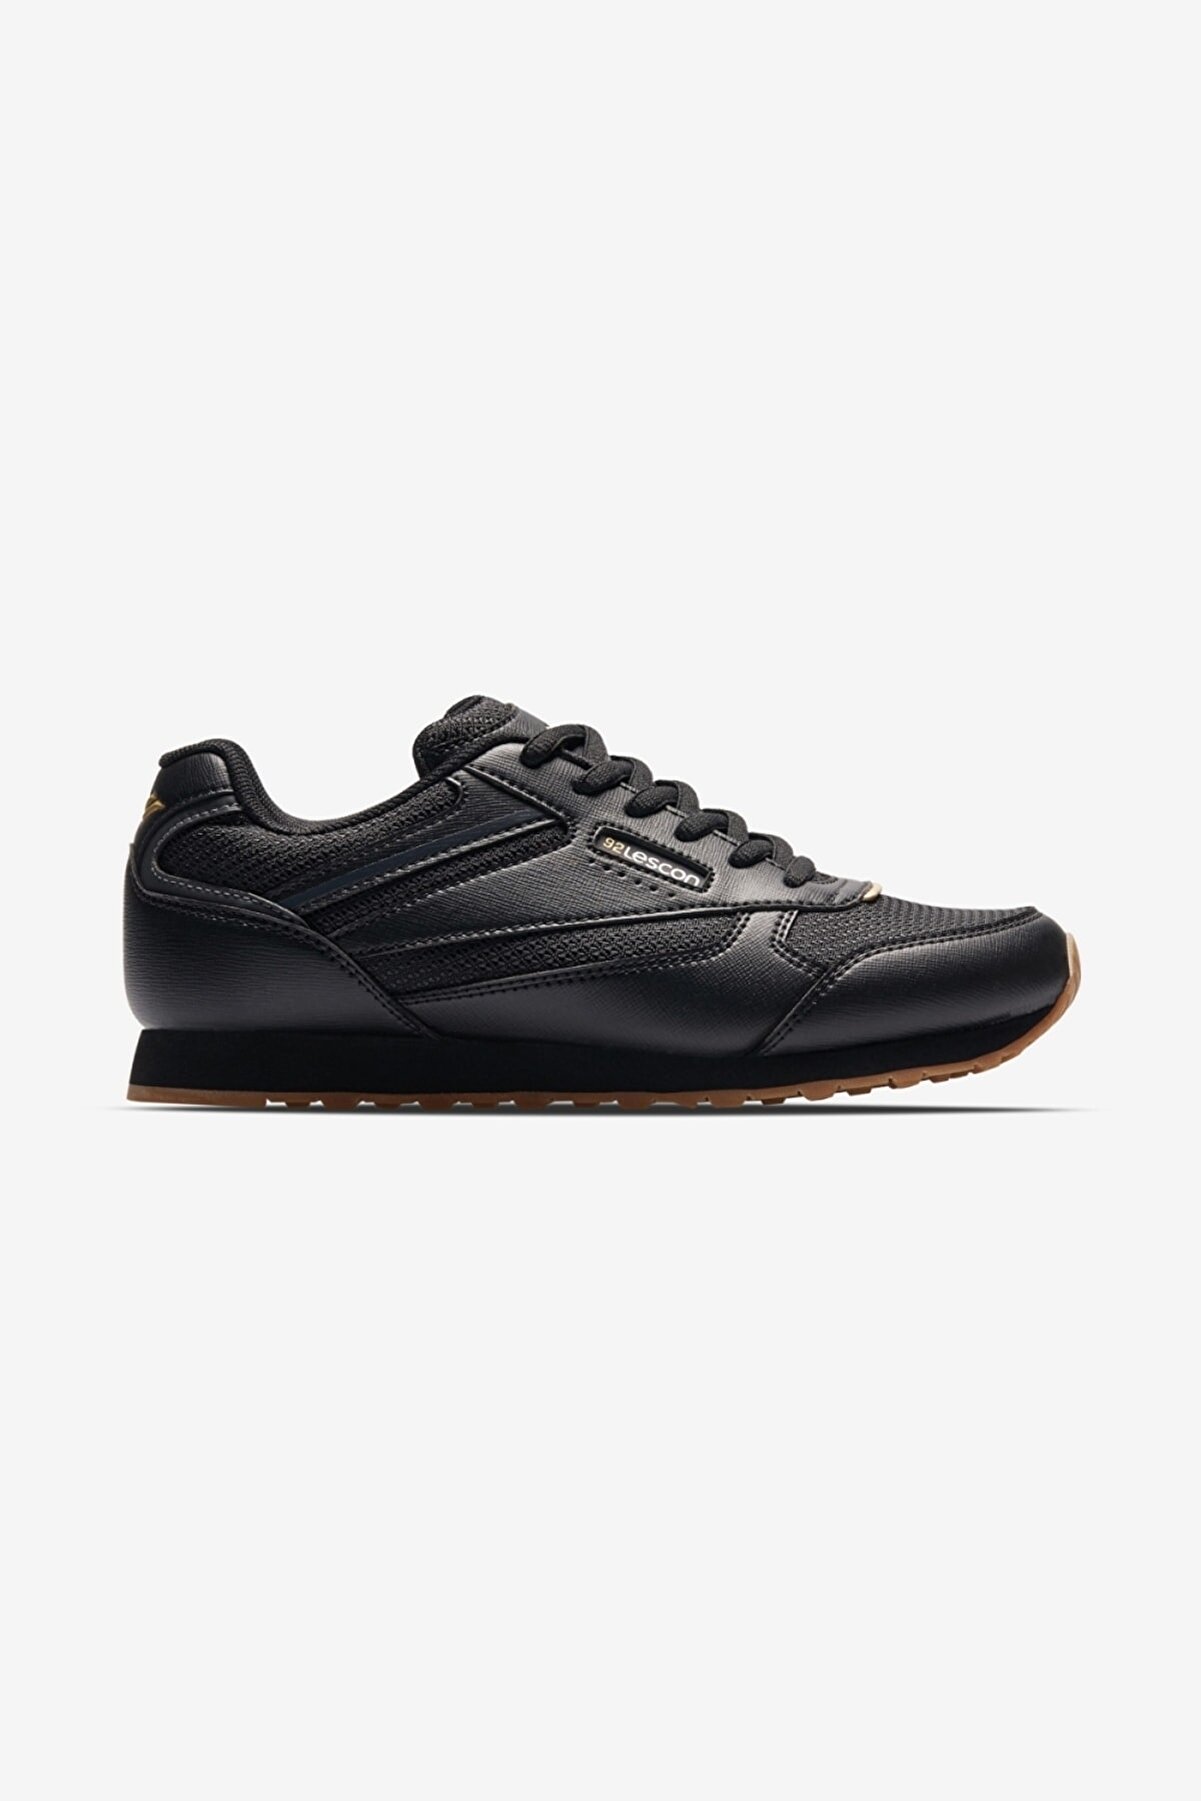 Lescon Kadın Siyah Sneaker Ayakkabı L-6618